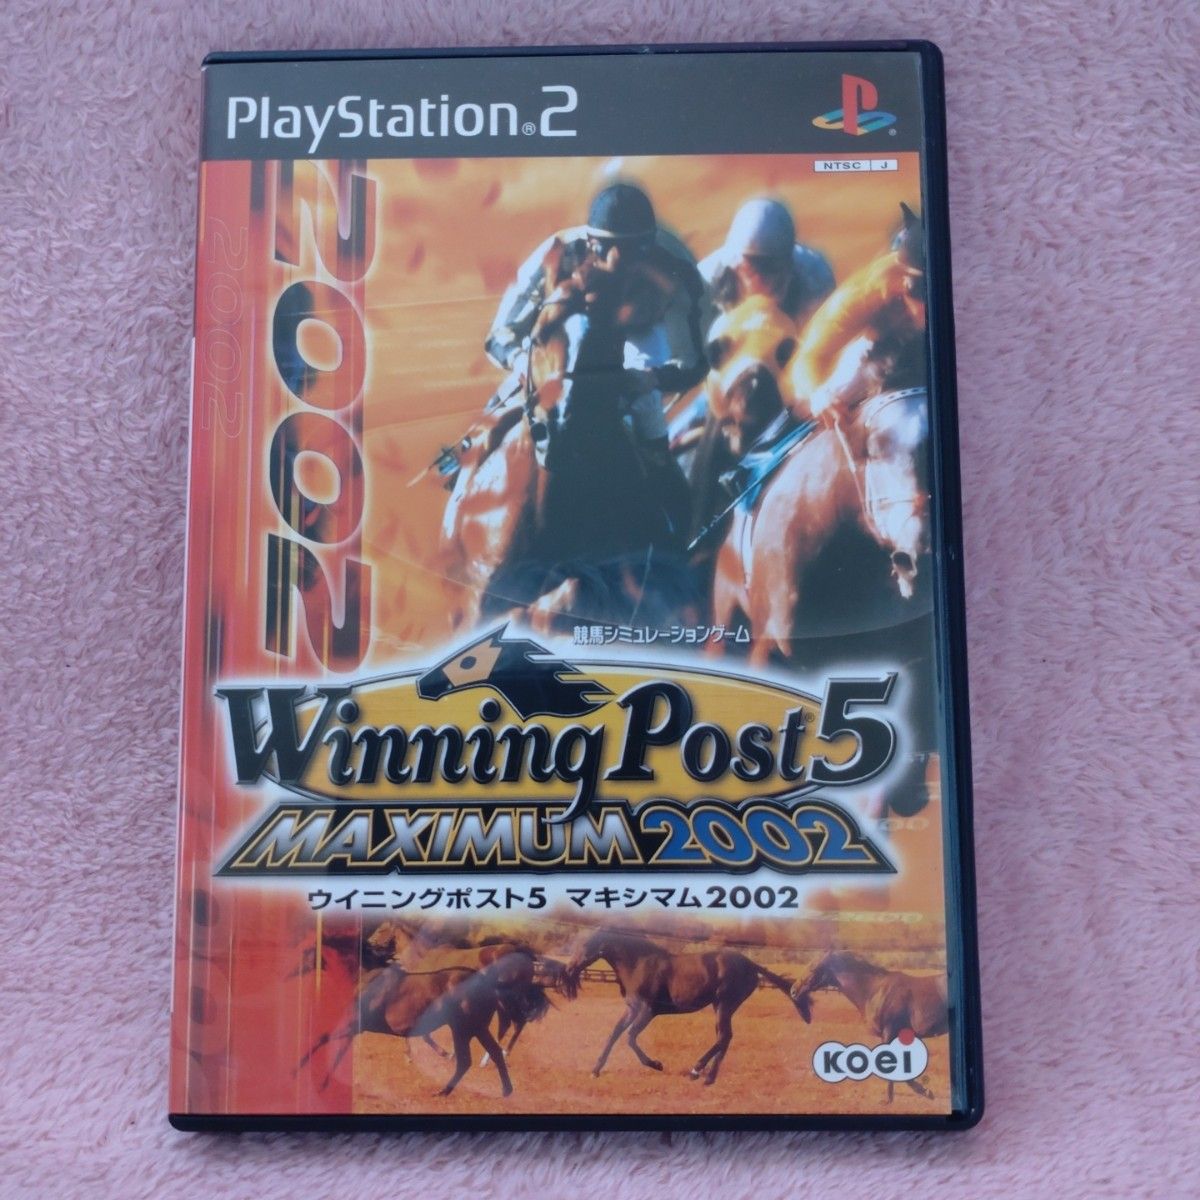  【PS2】「ウイニングポスト5 マキシマム2002」と「実況GI ステイブル」のセット